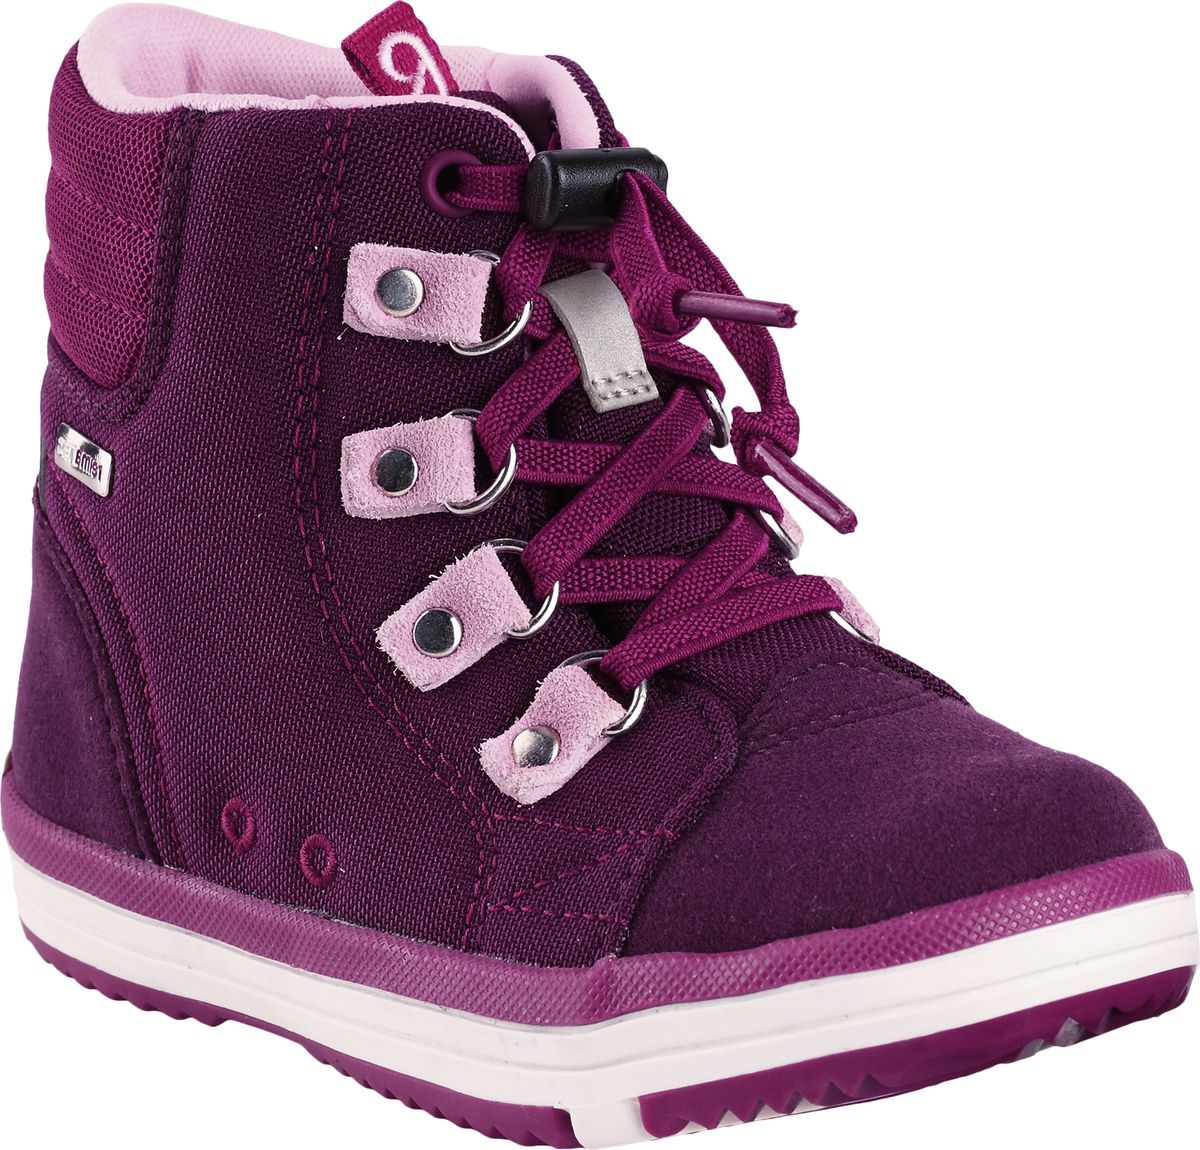 Ботинки детские Reima Wetter, цвет: фиолетовый. 5693434960. Размер 25